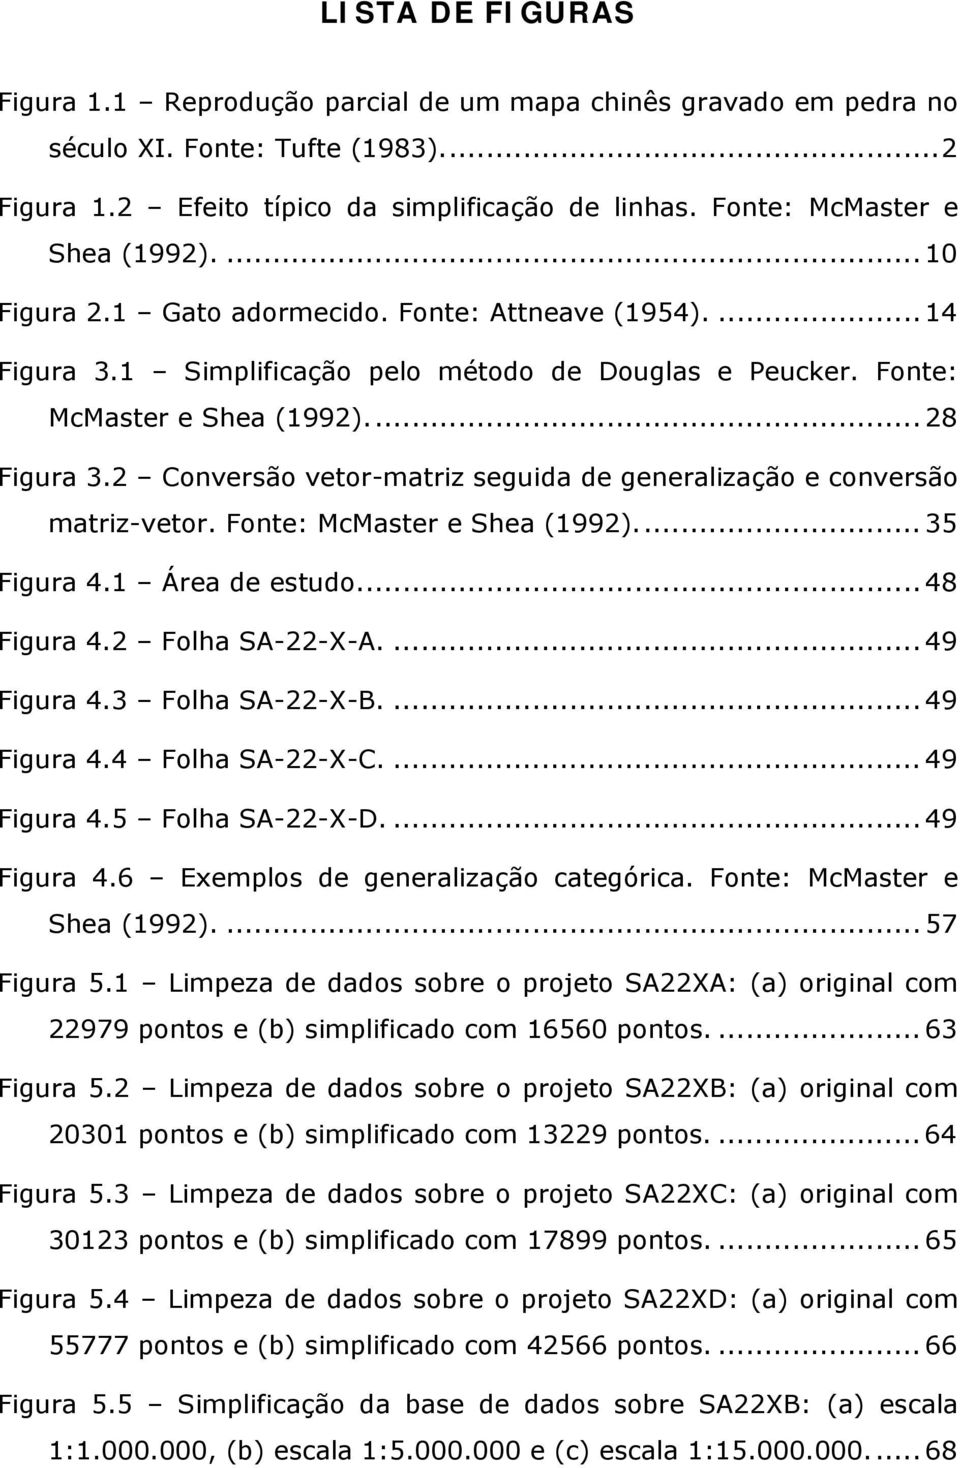 2 Conversão vetor-matriz seguida de generalização e conversão matriz-vetor. Fonte: McMaster e Shea (1992)... 35 Figura 4.1 Área de estudo... 48 Figura 4.2 Folha SA-22-X-A.... 49 Figura 4.